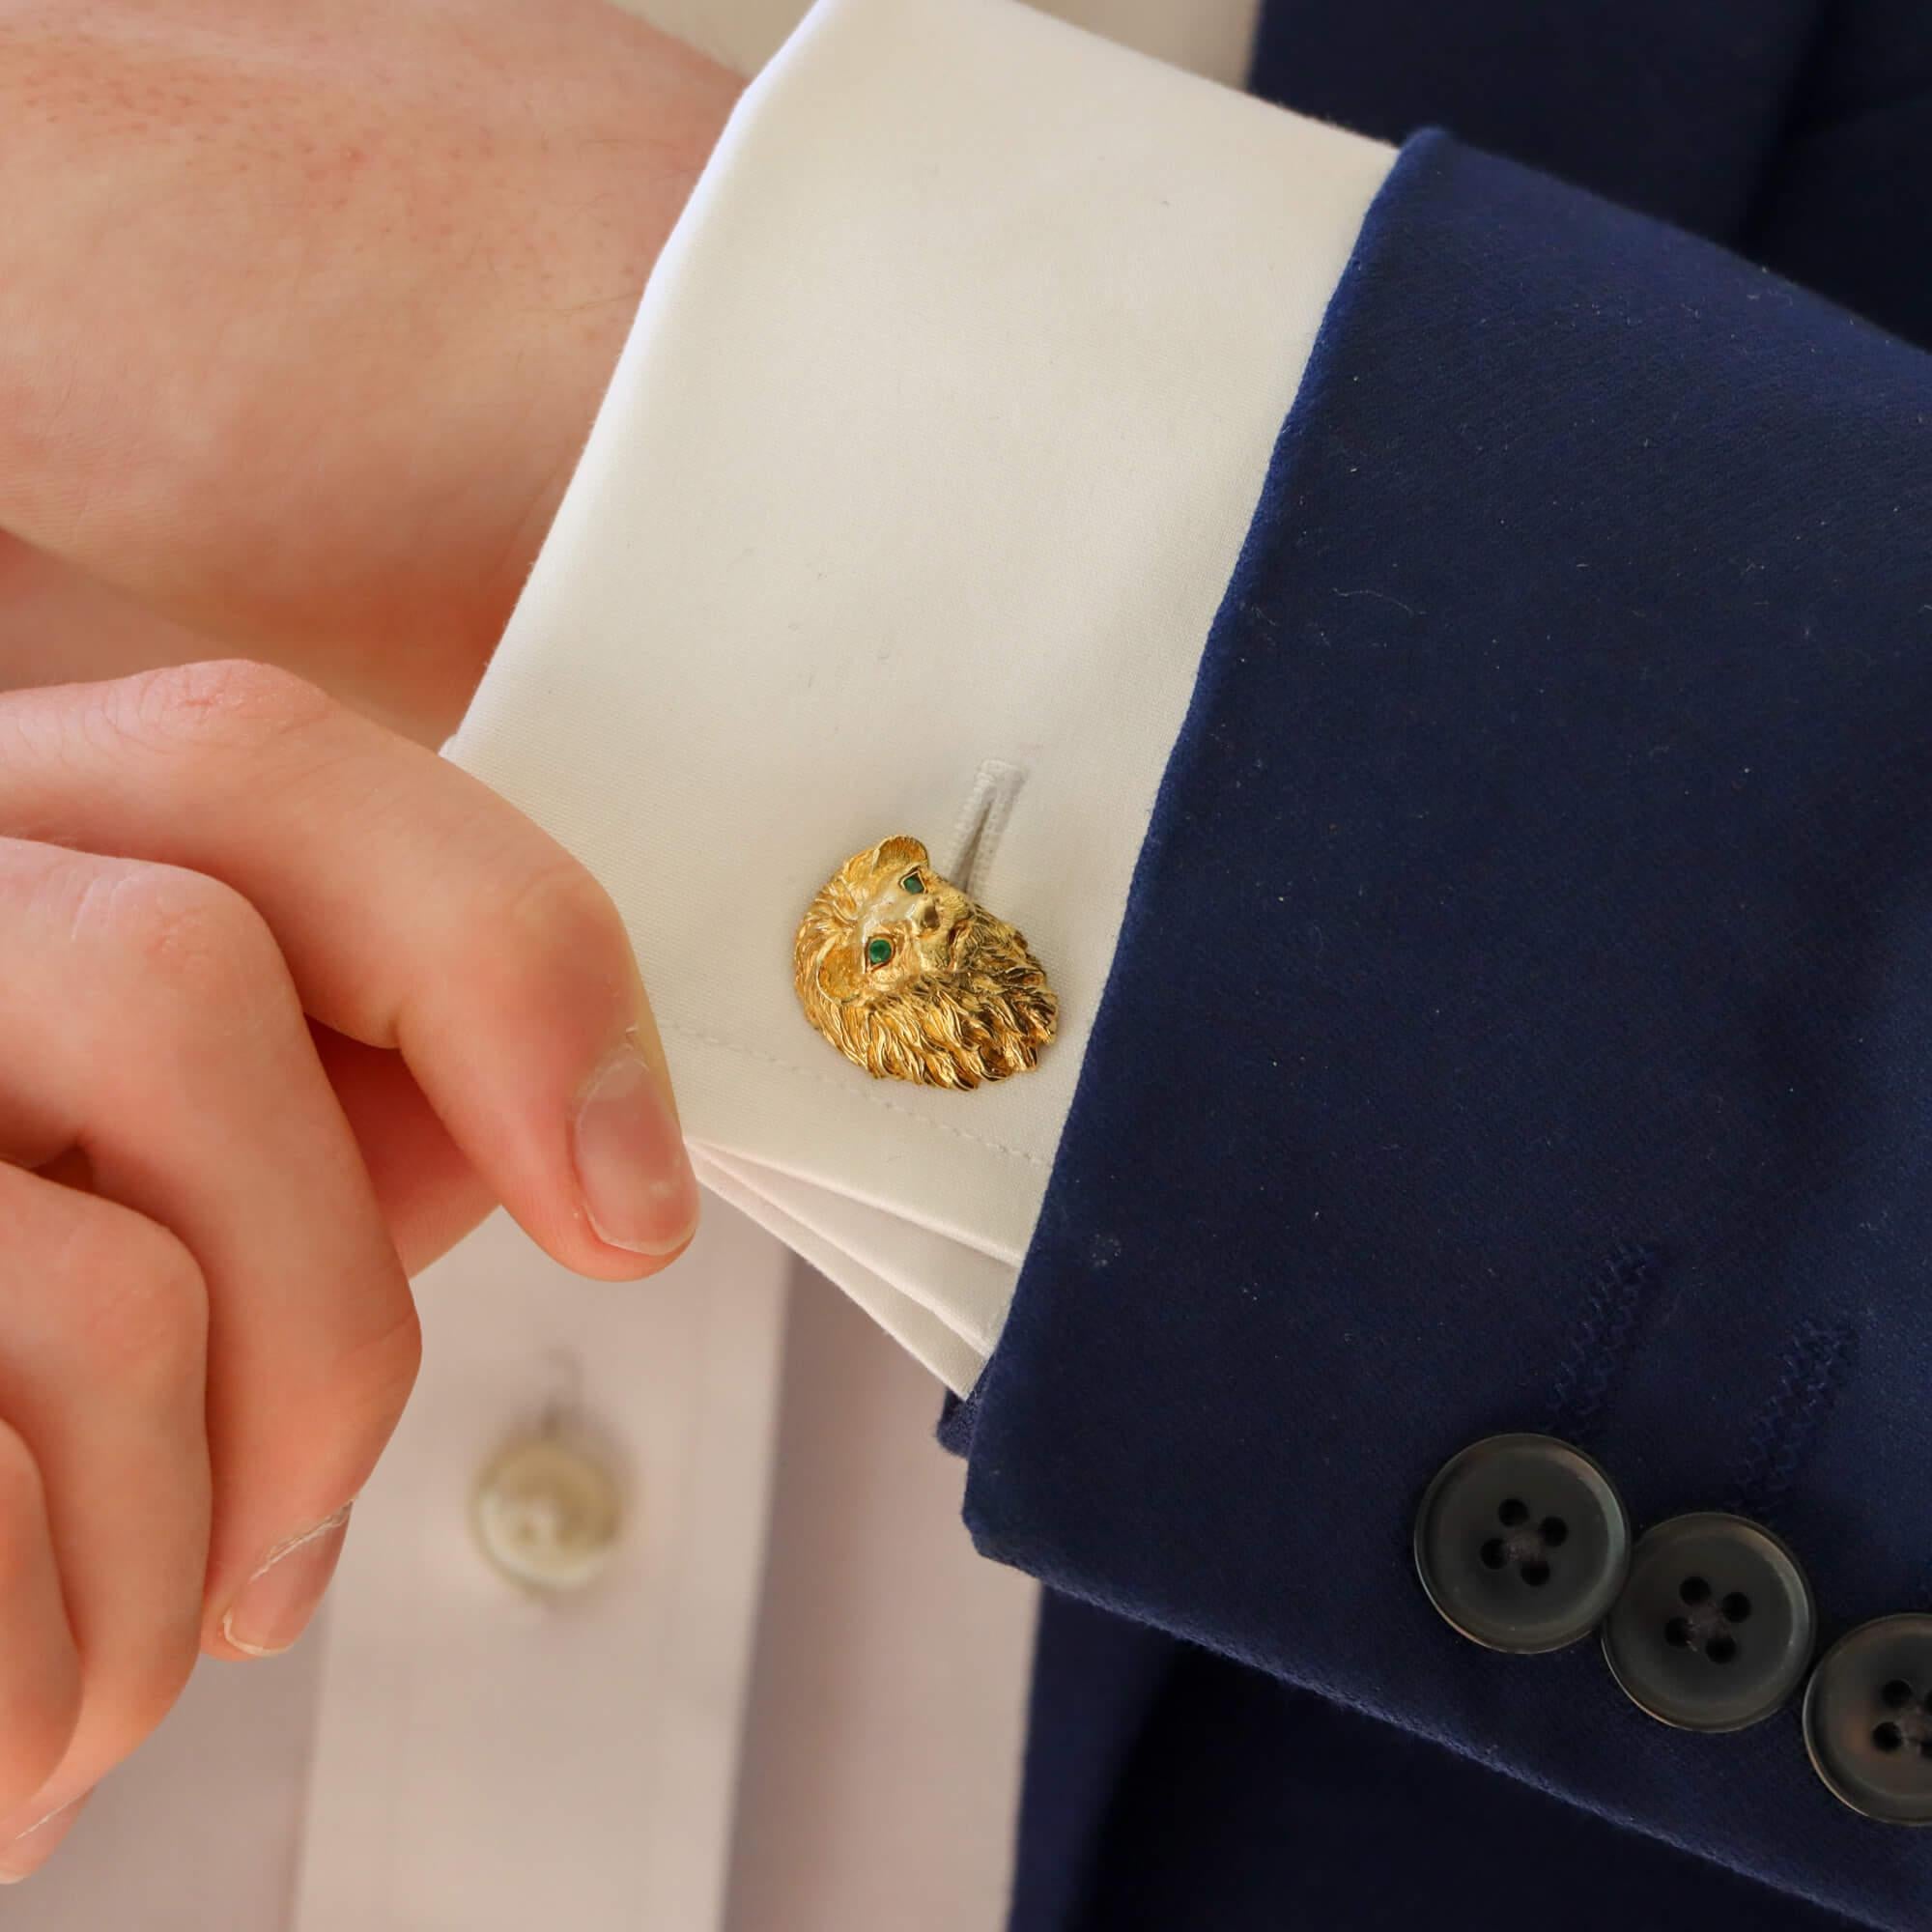 Une très belle paire de boutons de manchette vintage de Tiffany & Co. à tête de lion en émeraude, sertis en or jaune 18 carats. 

Chaque bouton de manchette représente une tête de lion mâle, réalisée et détaillée de manière experte en or jaune